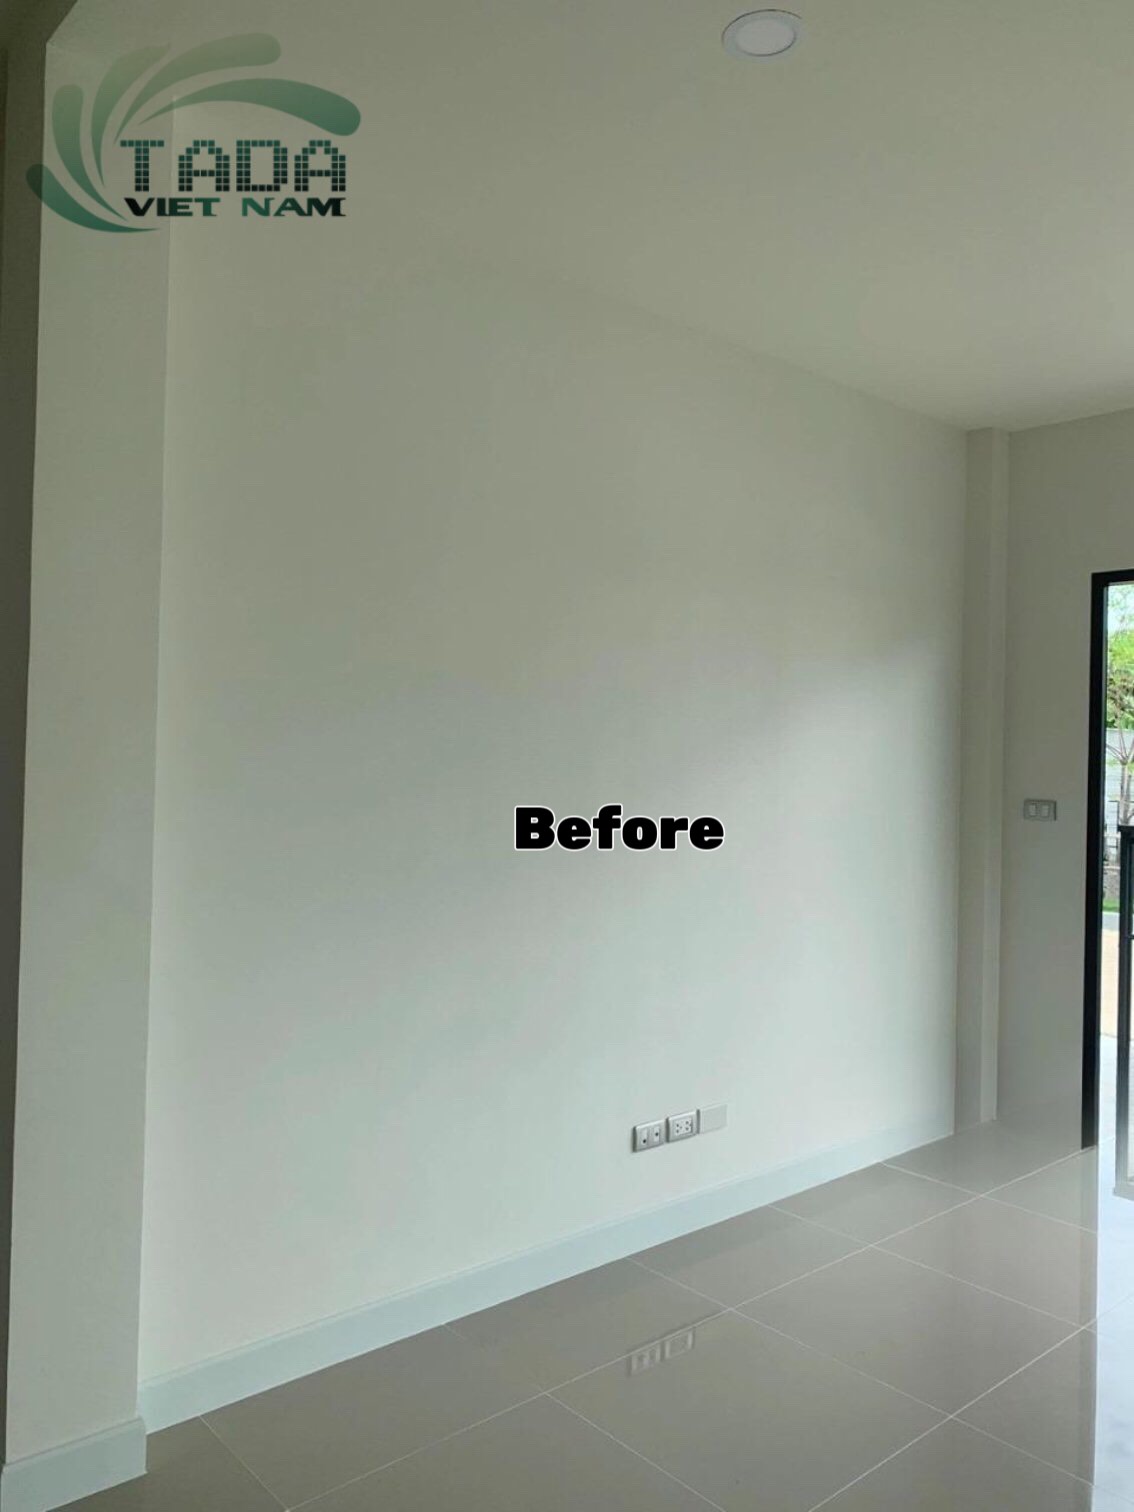 Tổng hợp hình ảnh trước và sau khi hoàn thiện Kệ Tivi kết hợp mảng tường của TaDa Việt Nam